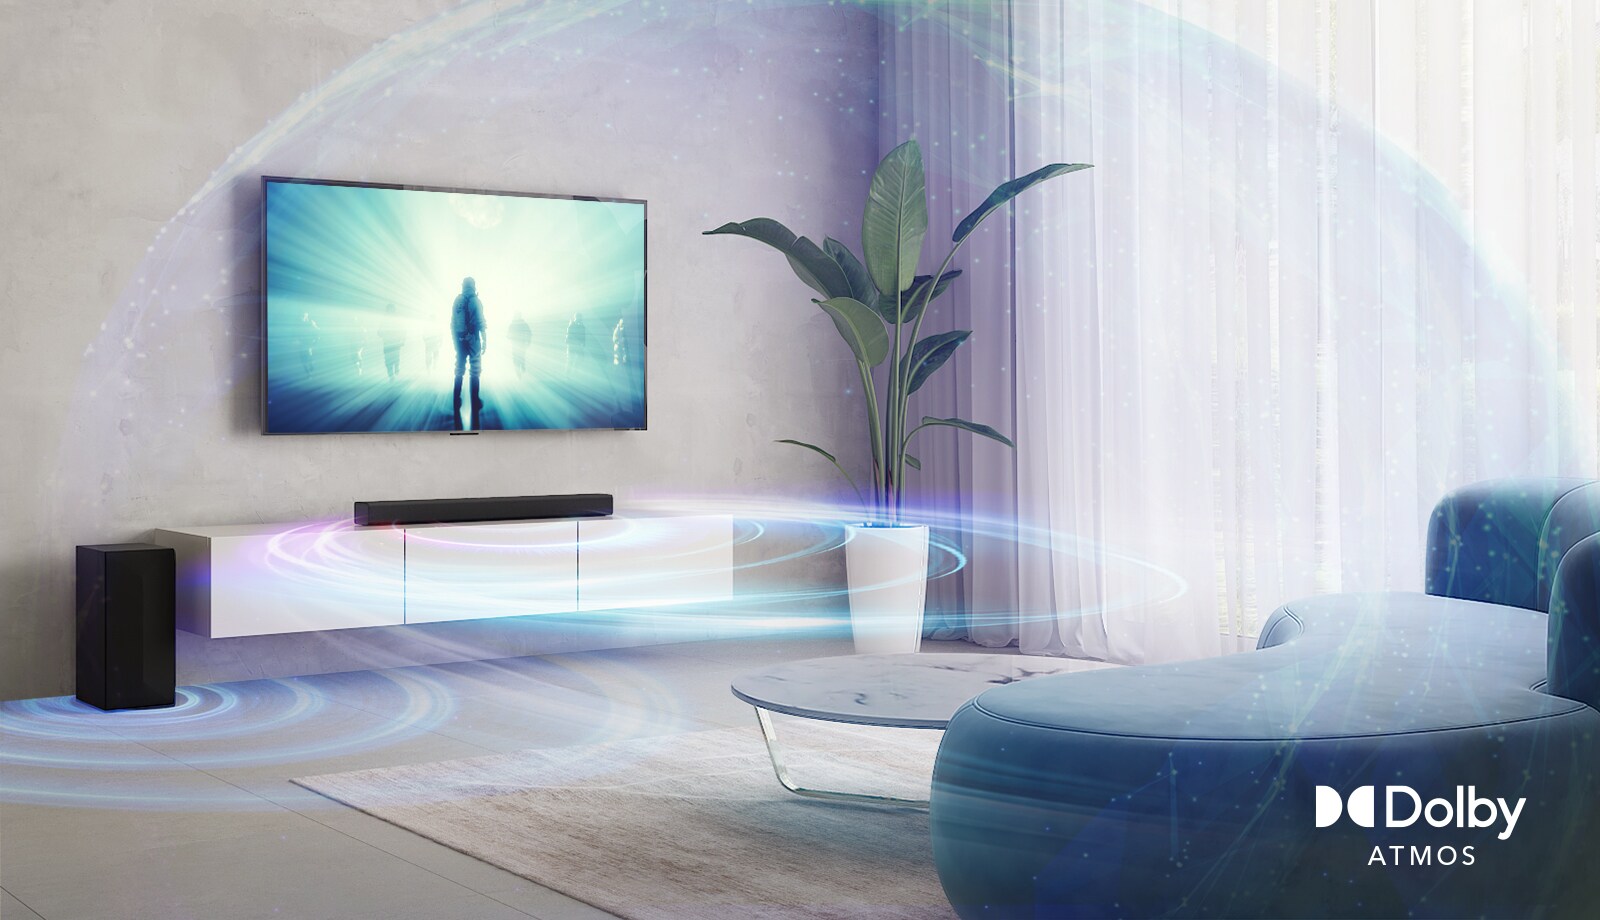 Telewizor LG wiszący na ścianie w pokoju dziennym. Na ekranie telewizora widać kadr z filmu. Pod telewizorem, na beżowej półce, znajduje się soundbar LG, po którego lewej stronie jest głośnik tylny. Logo Dolby Atmos Virtual w prawym dolnym rogu obrazu.